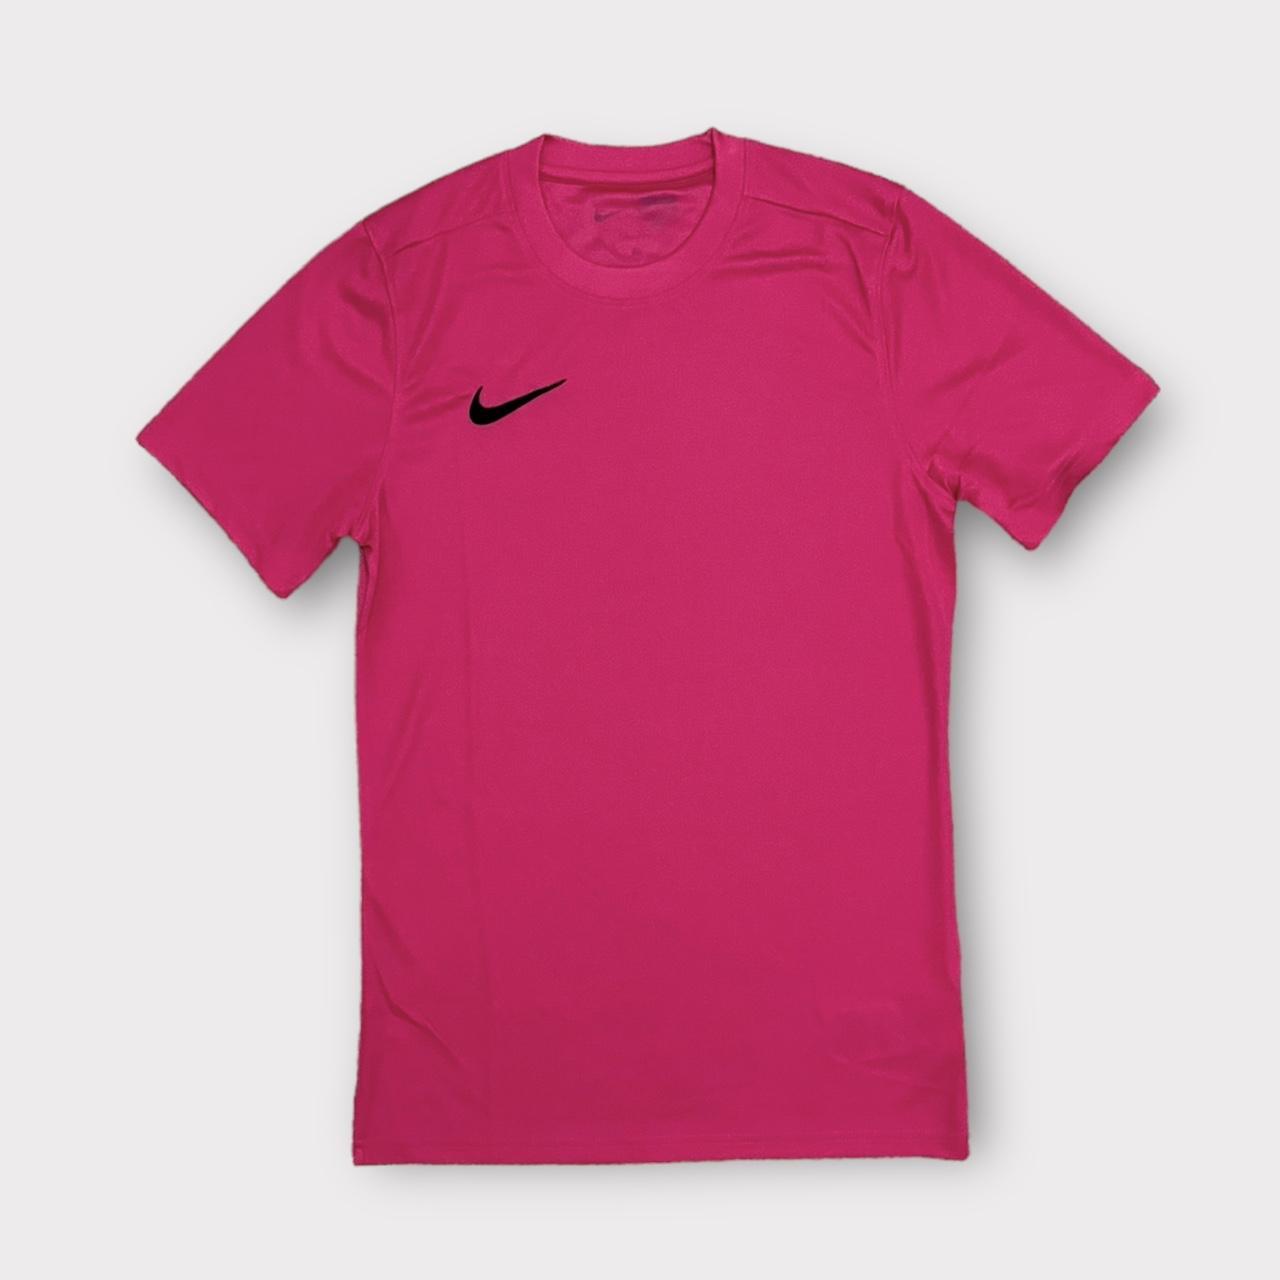 Nike Men's Pink T-shirt | Depop